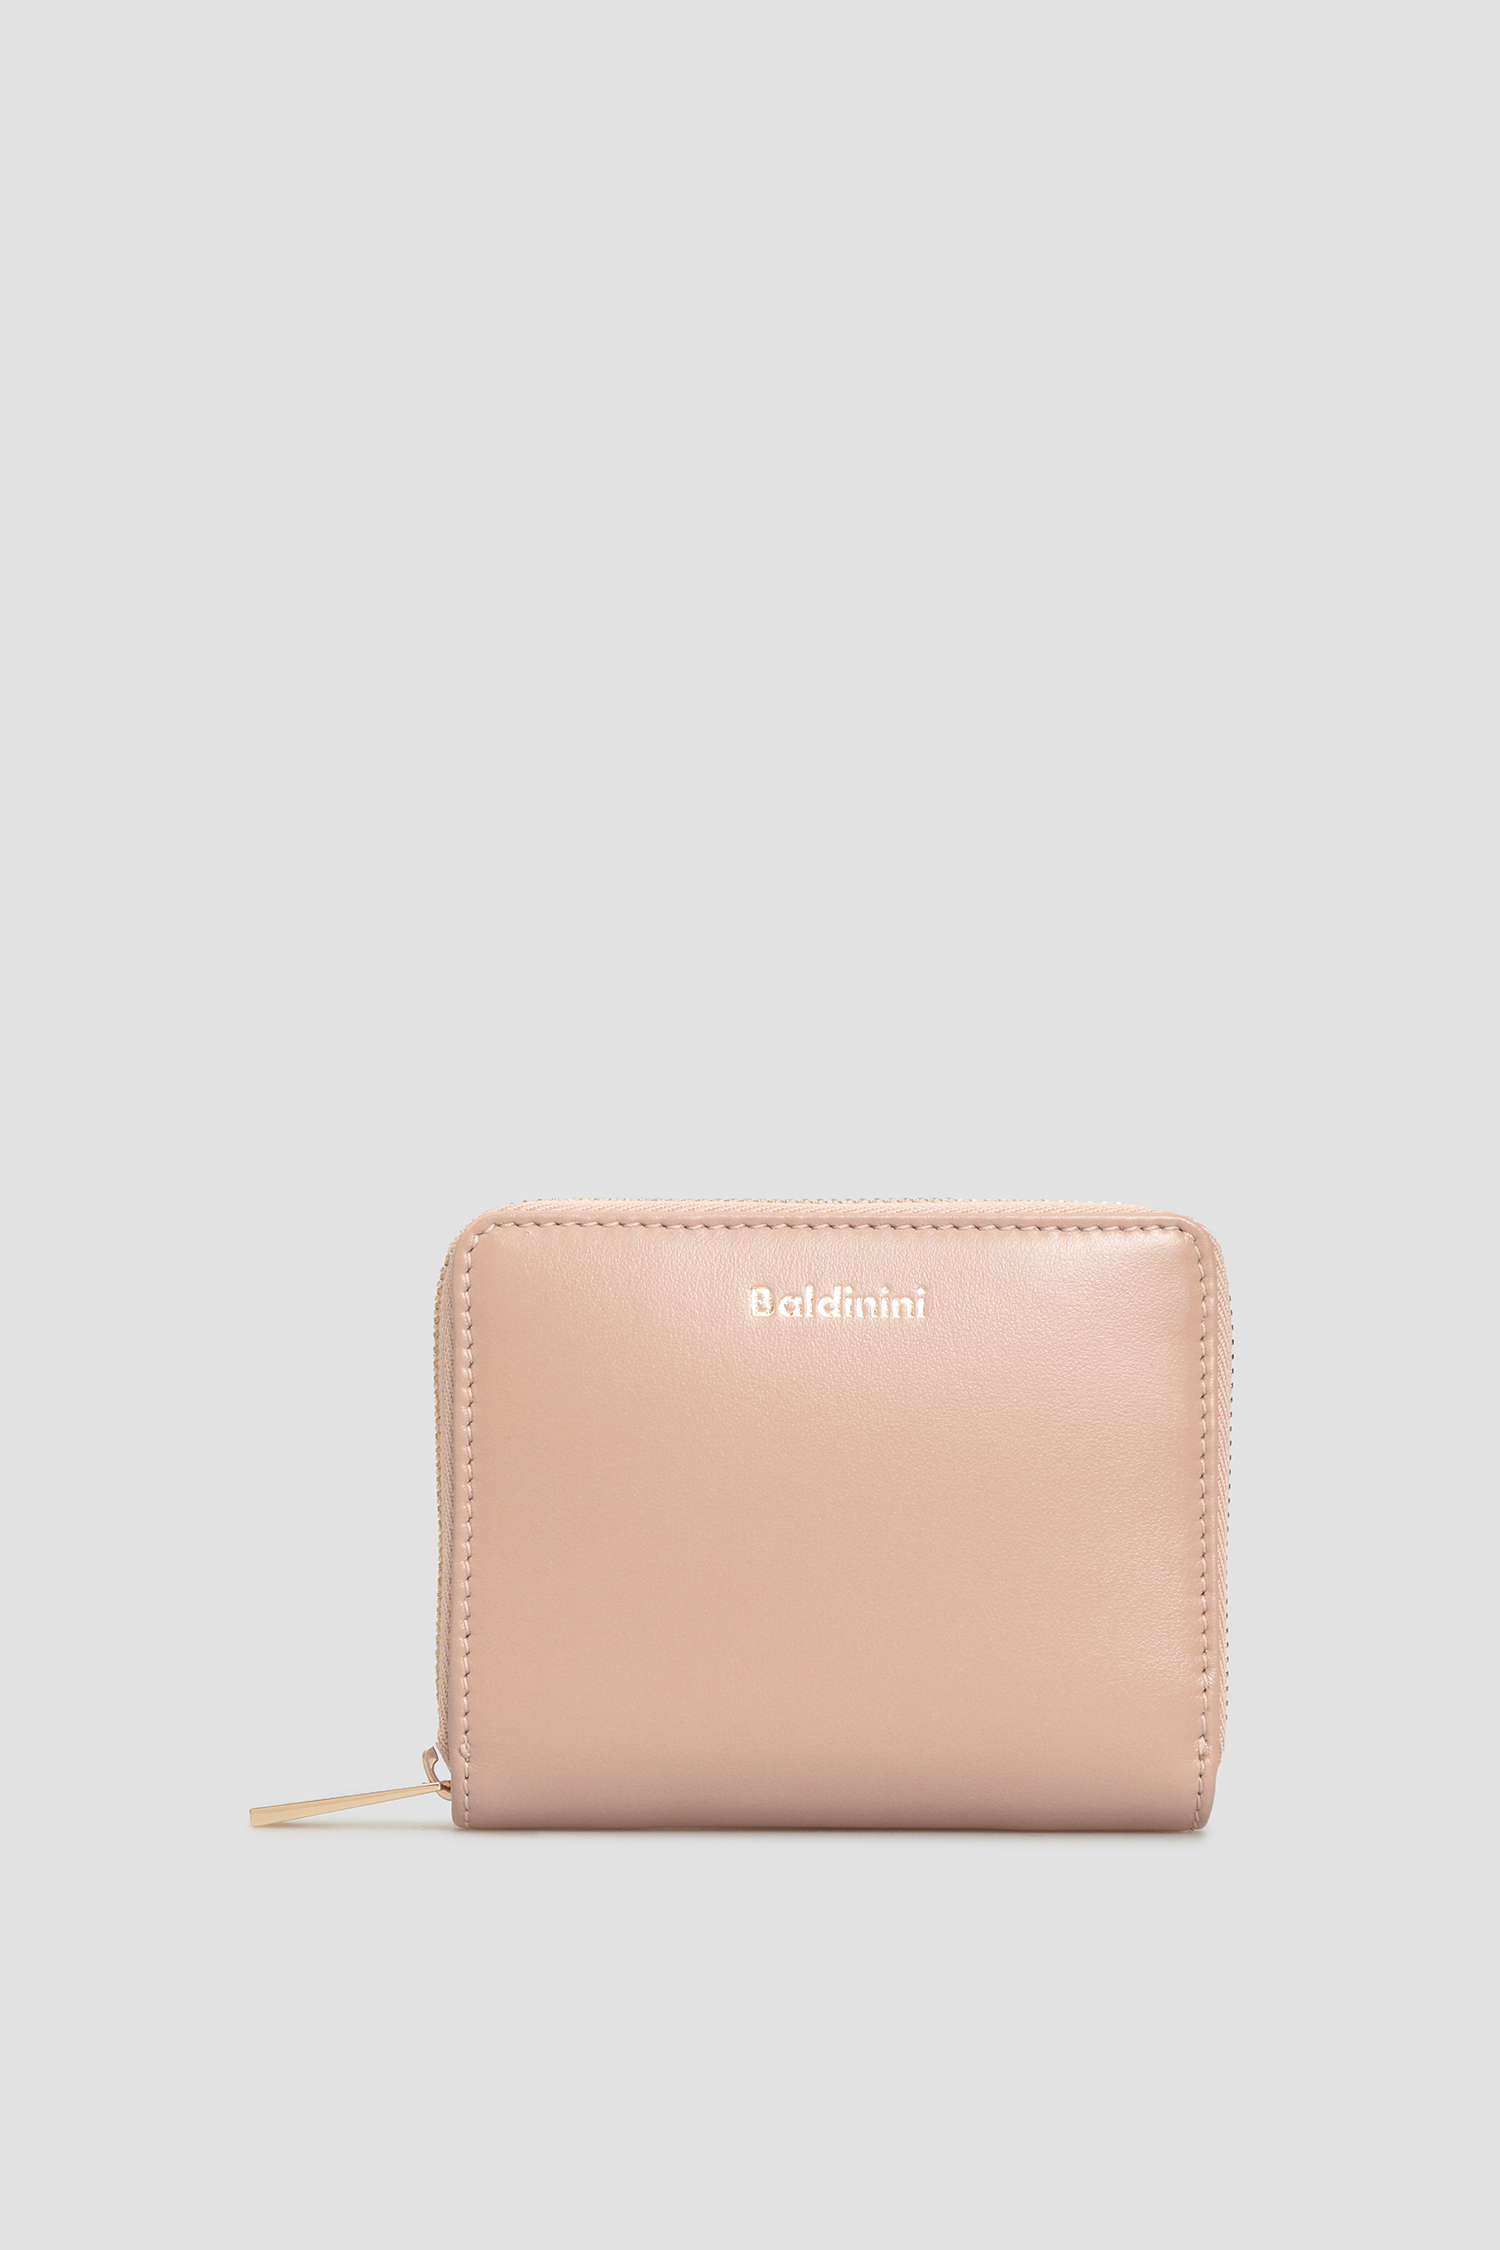 Пудровый кожаный кошелек для девушек Baldinini P2B001FIRE;7700